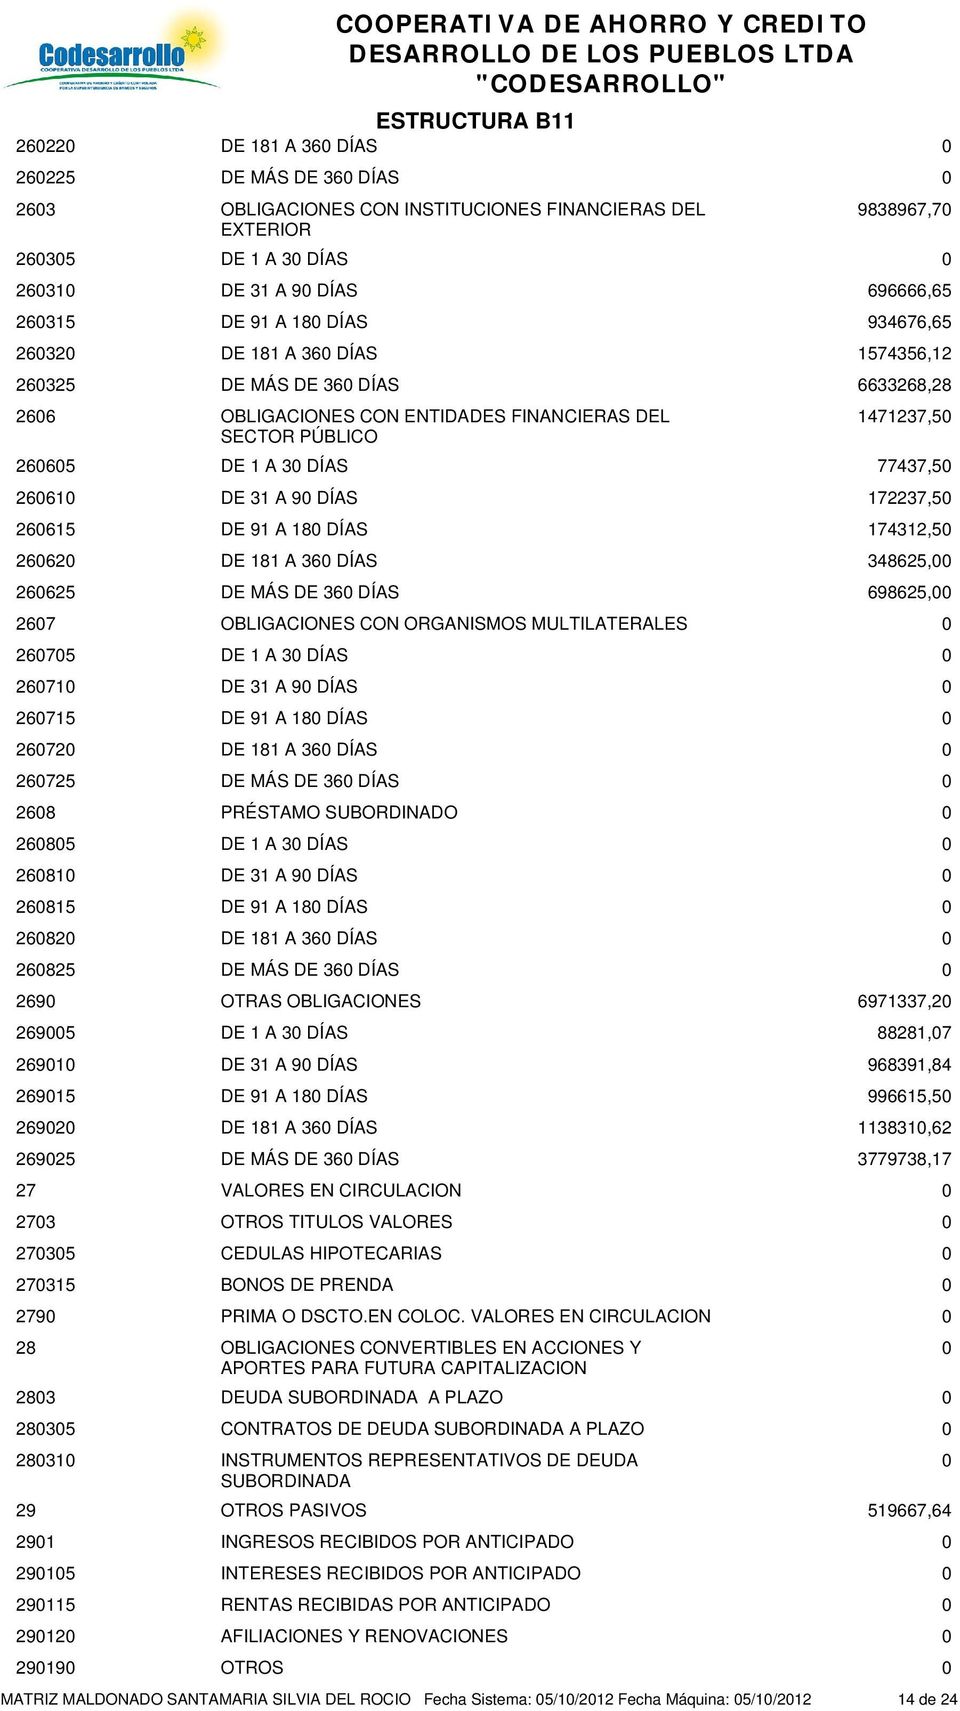 CIRCULACION 273 OTROS TITULOS VALORES 2735 CEDULAS HIPOTECARIAS 27315 BONOS DE PRENDA 279 PRIMA O DSCTO.EN COLOC.